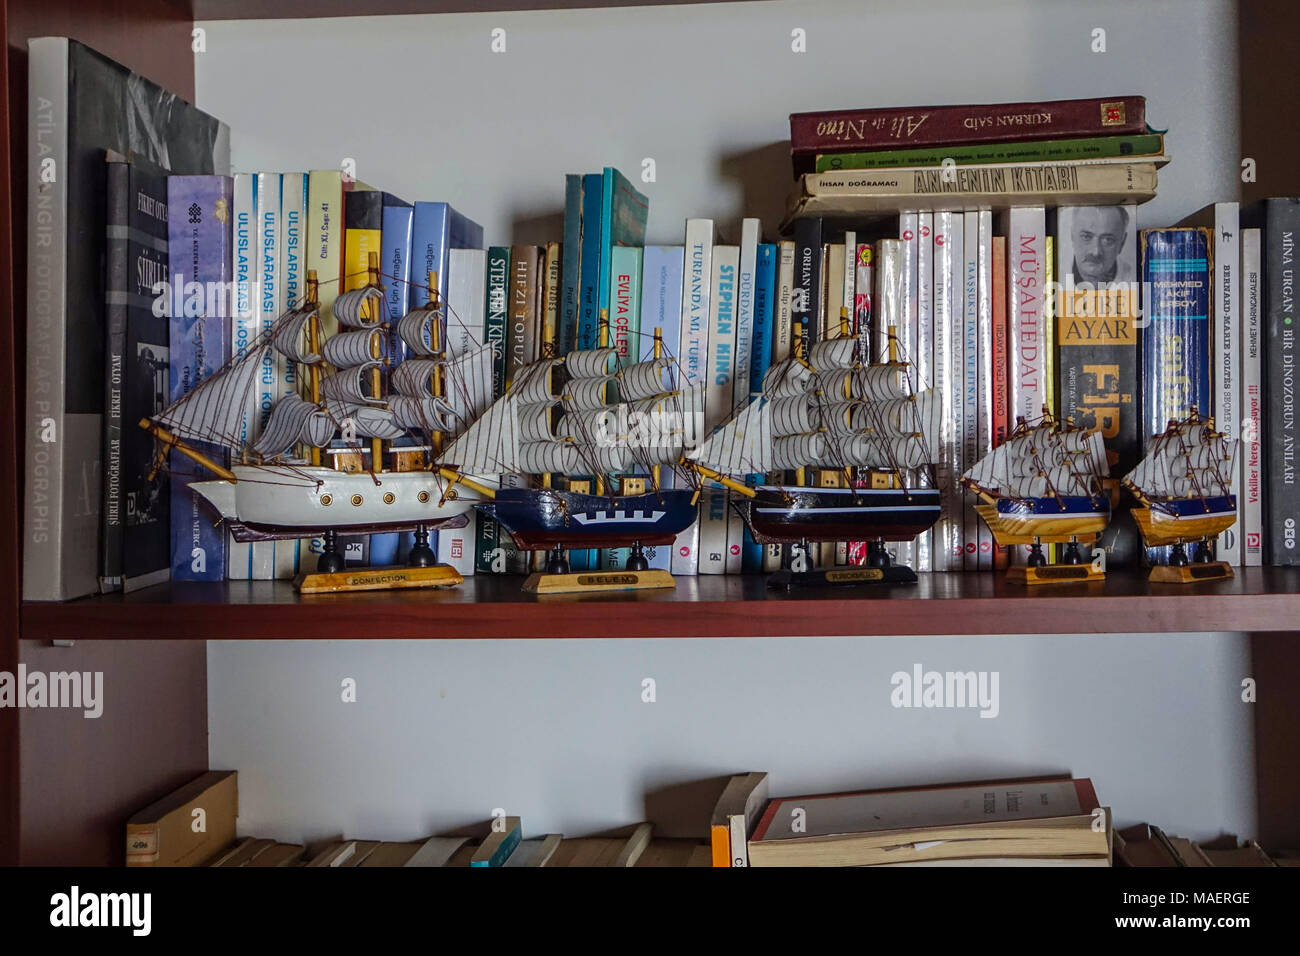 Ligne de quatre navires à voile petit modèle sur étagère, Antalya, Turquie Banque D'Images